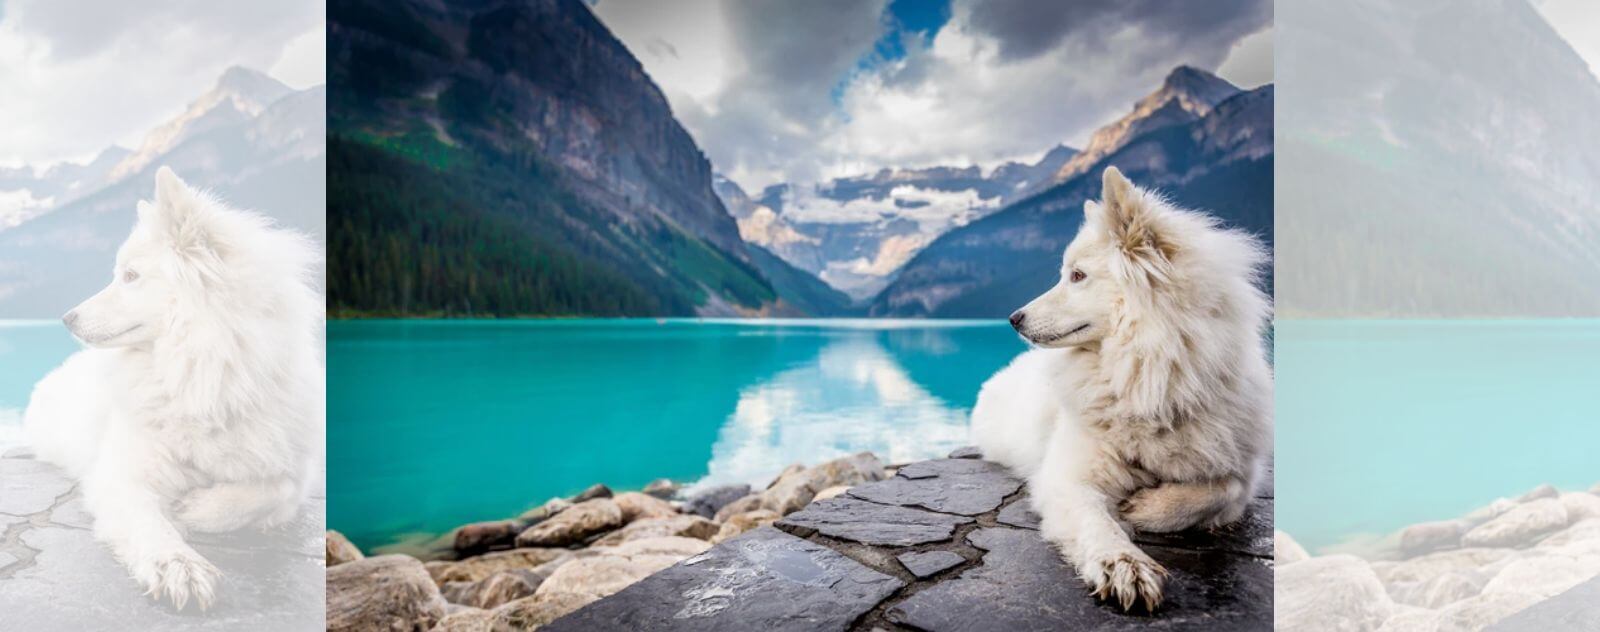 loup blanc assis a cote d'un lac bleu au canada